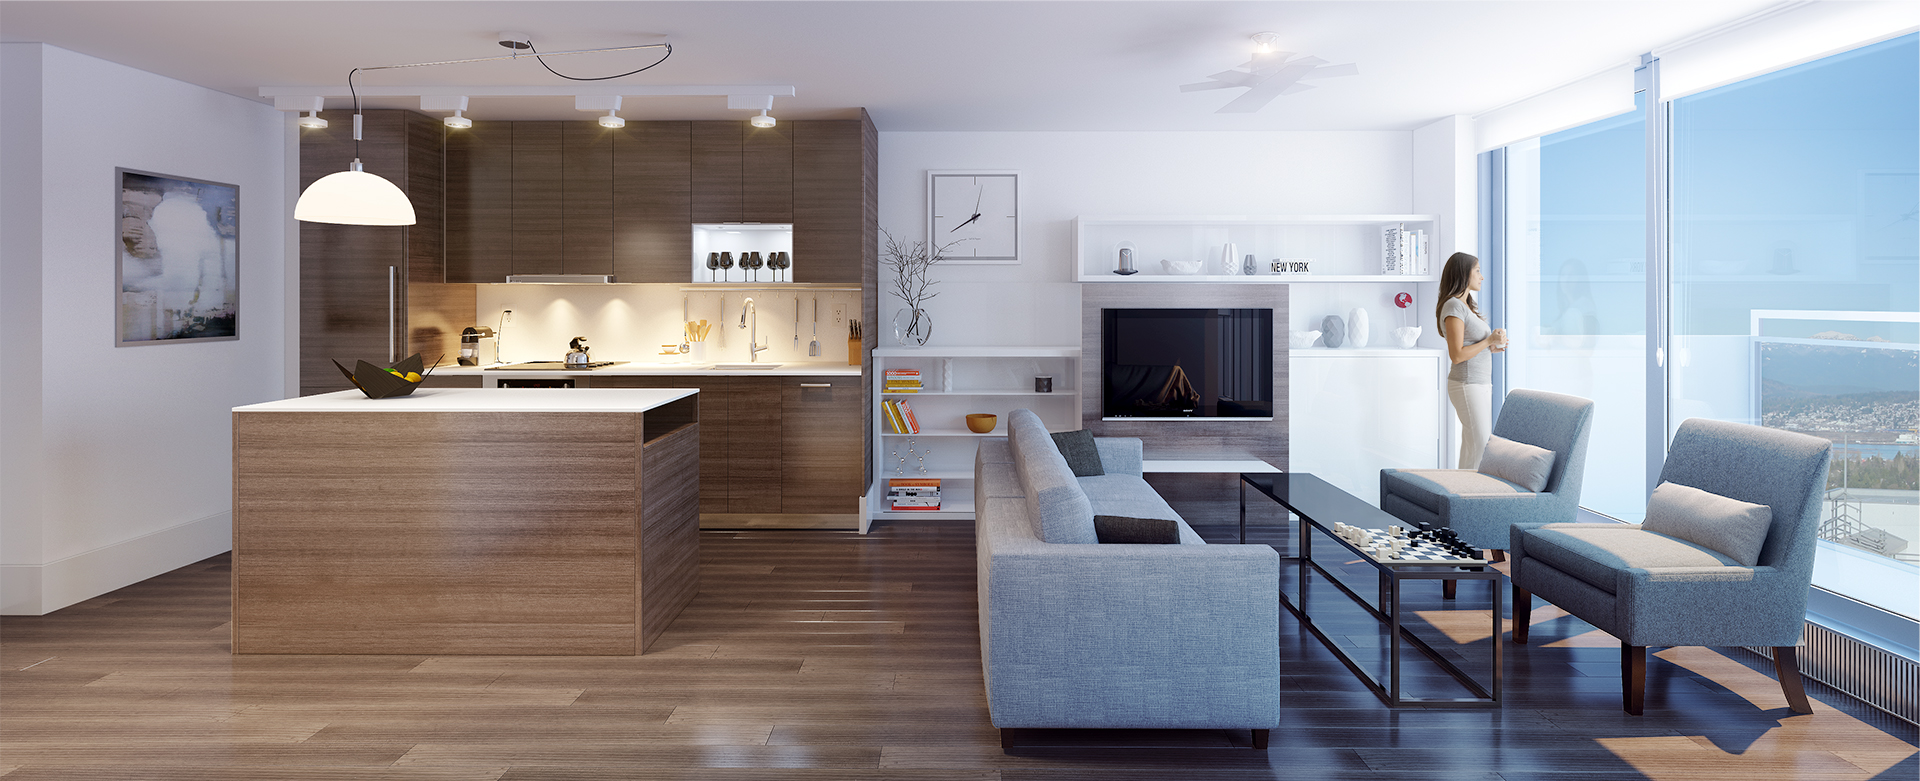 Kitchen lounge | Interior Design Ideas